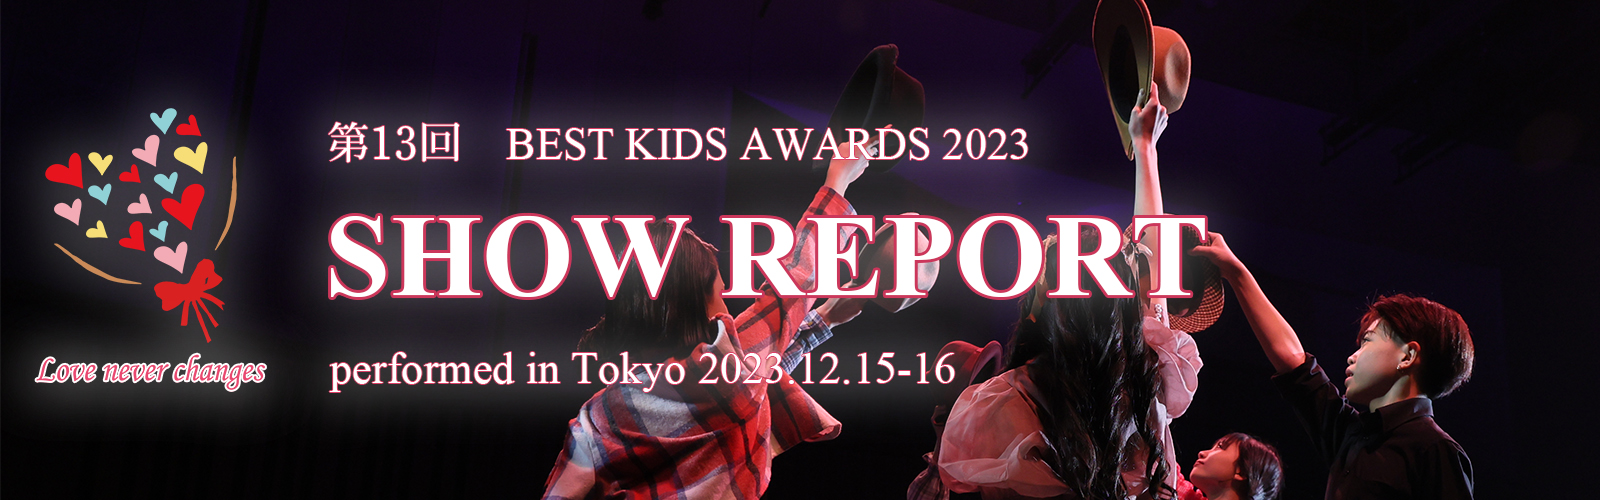 第13回 BEST KIDS AWARDS 2023 開催レポート